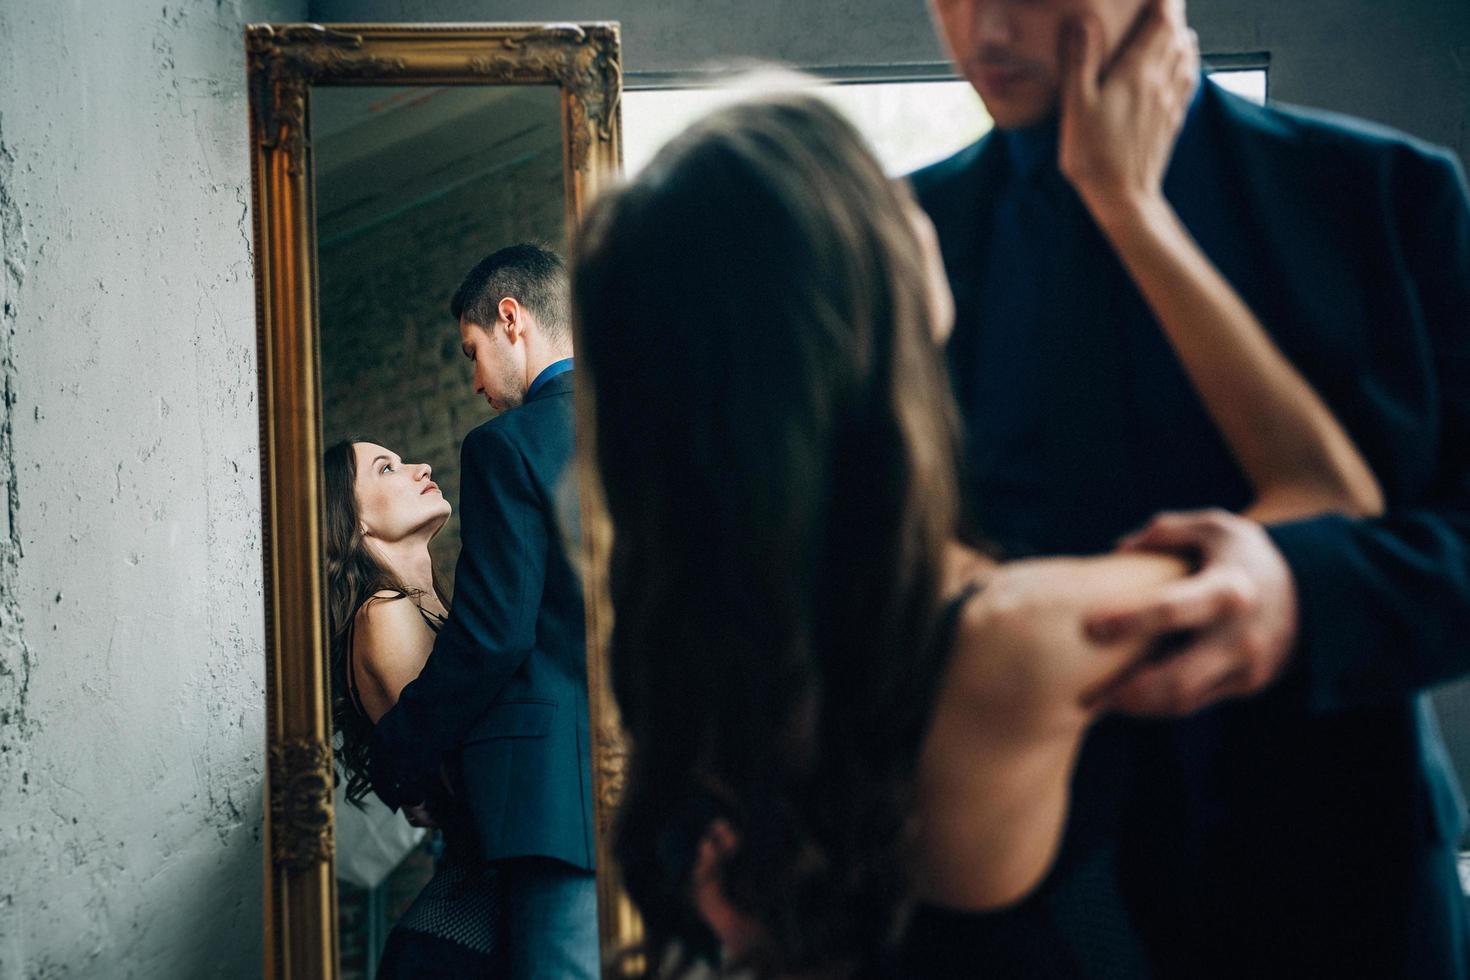 la fille tend la main vers le gars et leurs images se reflètent dans le miroir photo